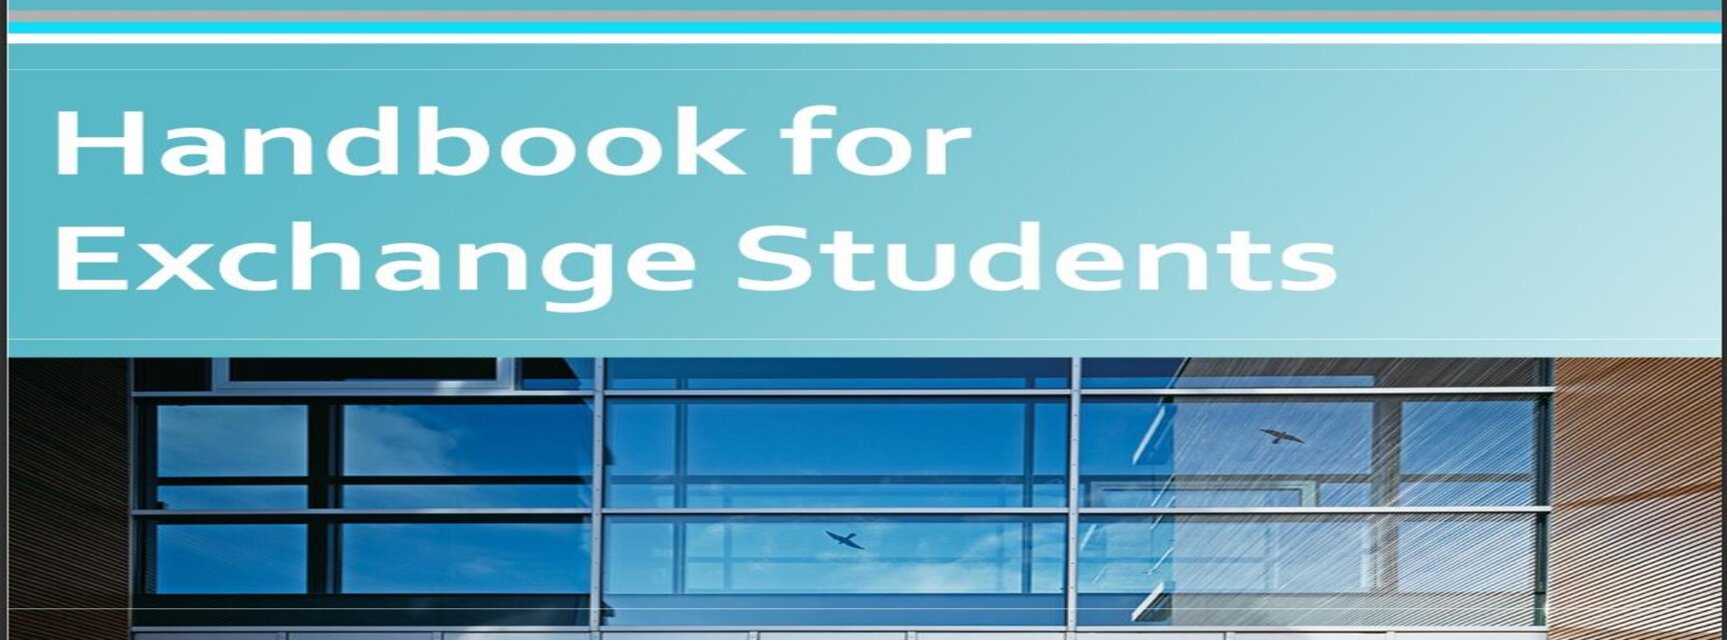 Exchange Student Handbook